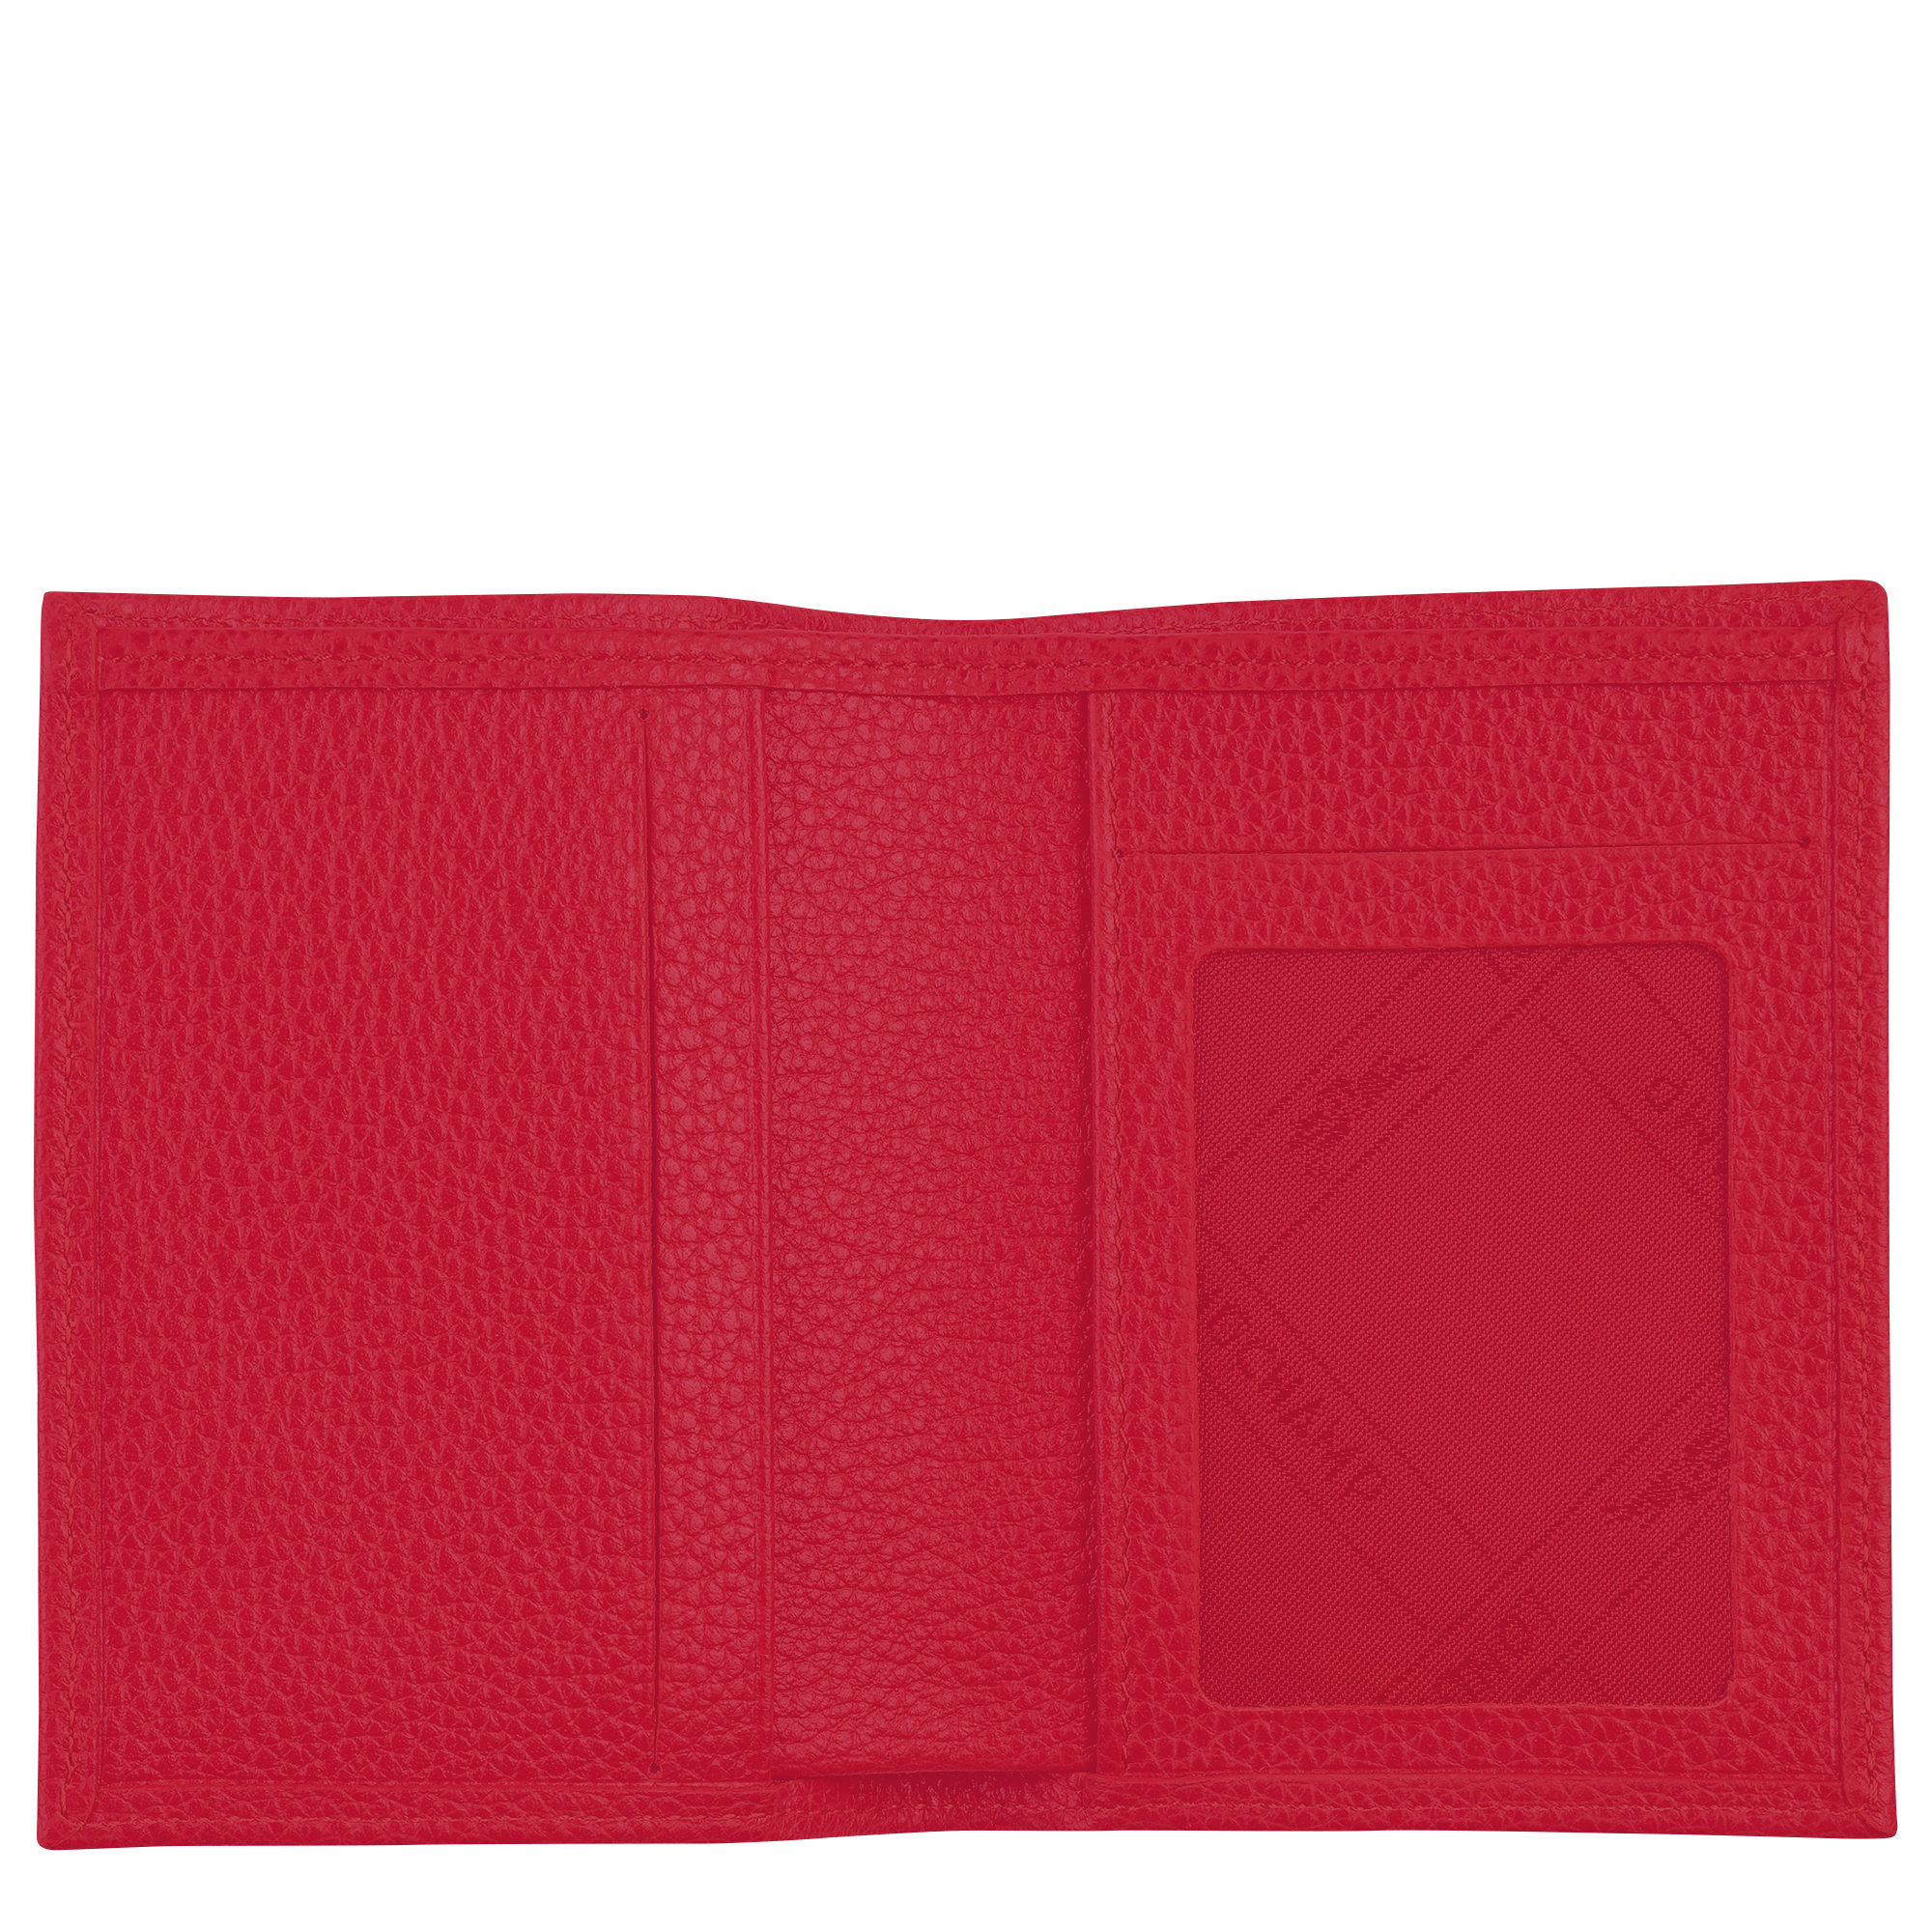 Le Foulonné Card holder Love - Leather (L3572021C39)